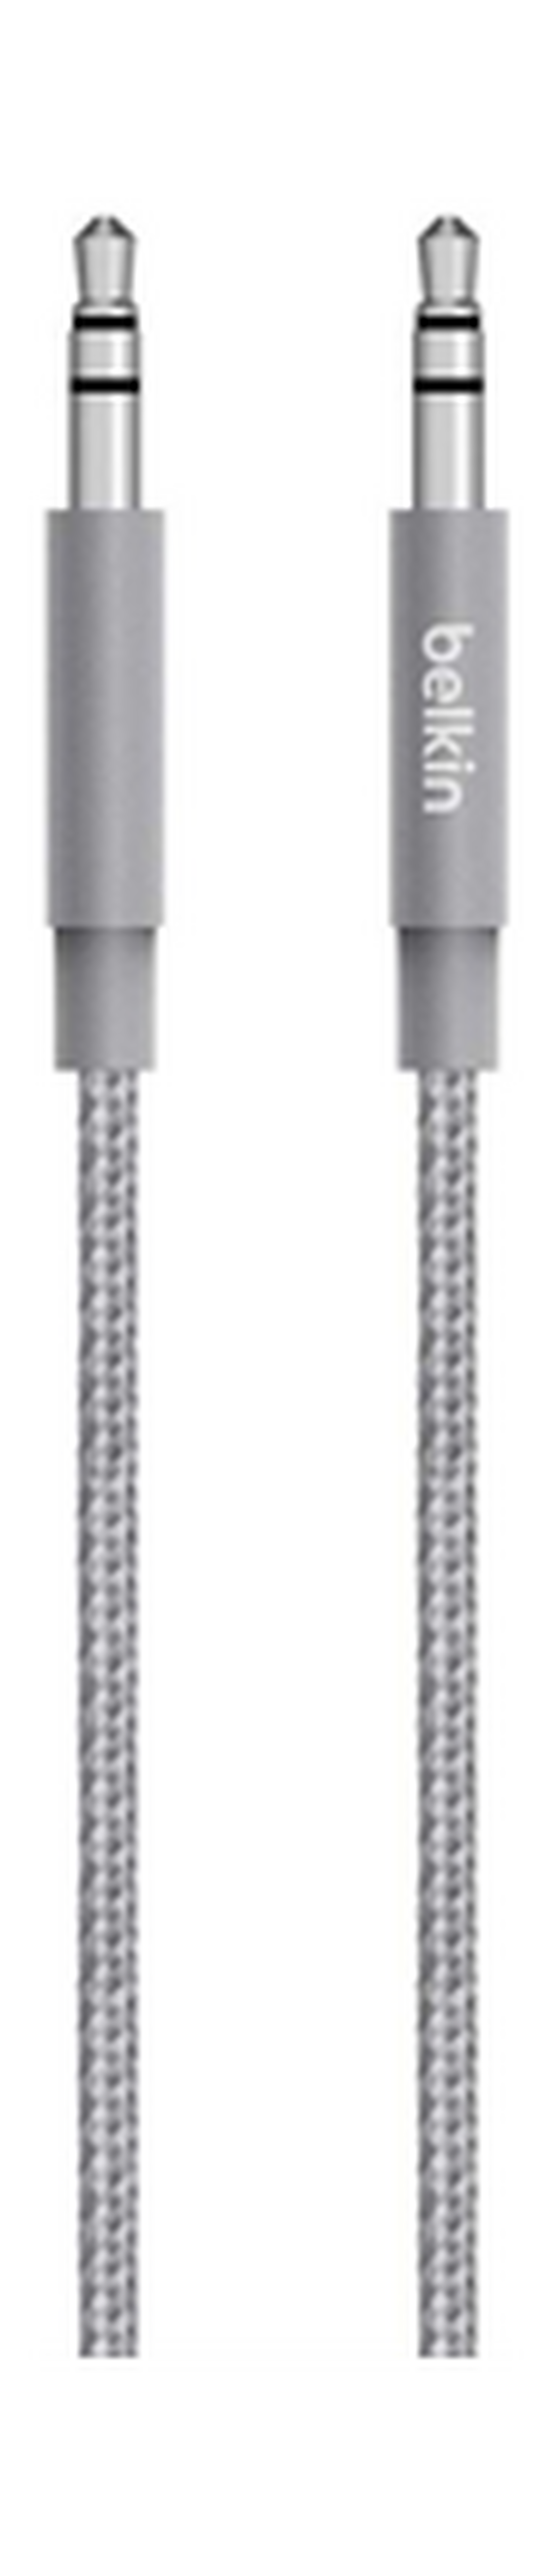 Belkin Mixit Metallic AUX Cable 1.2 Meters (AV10164bt04) - Grey